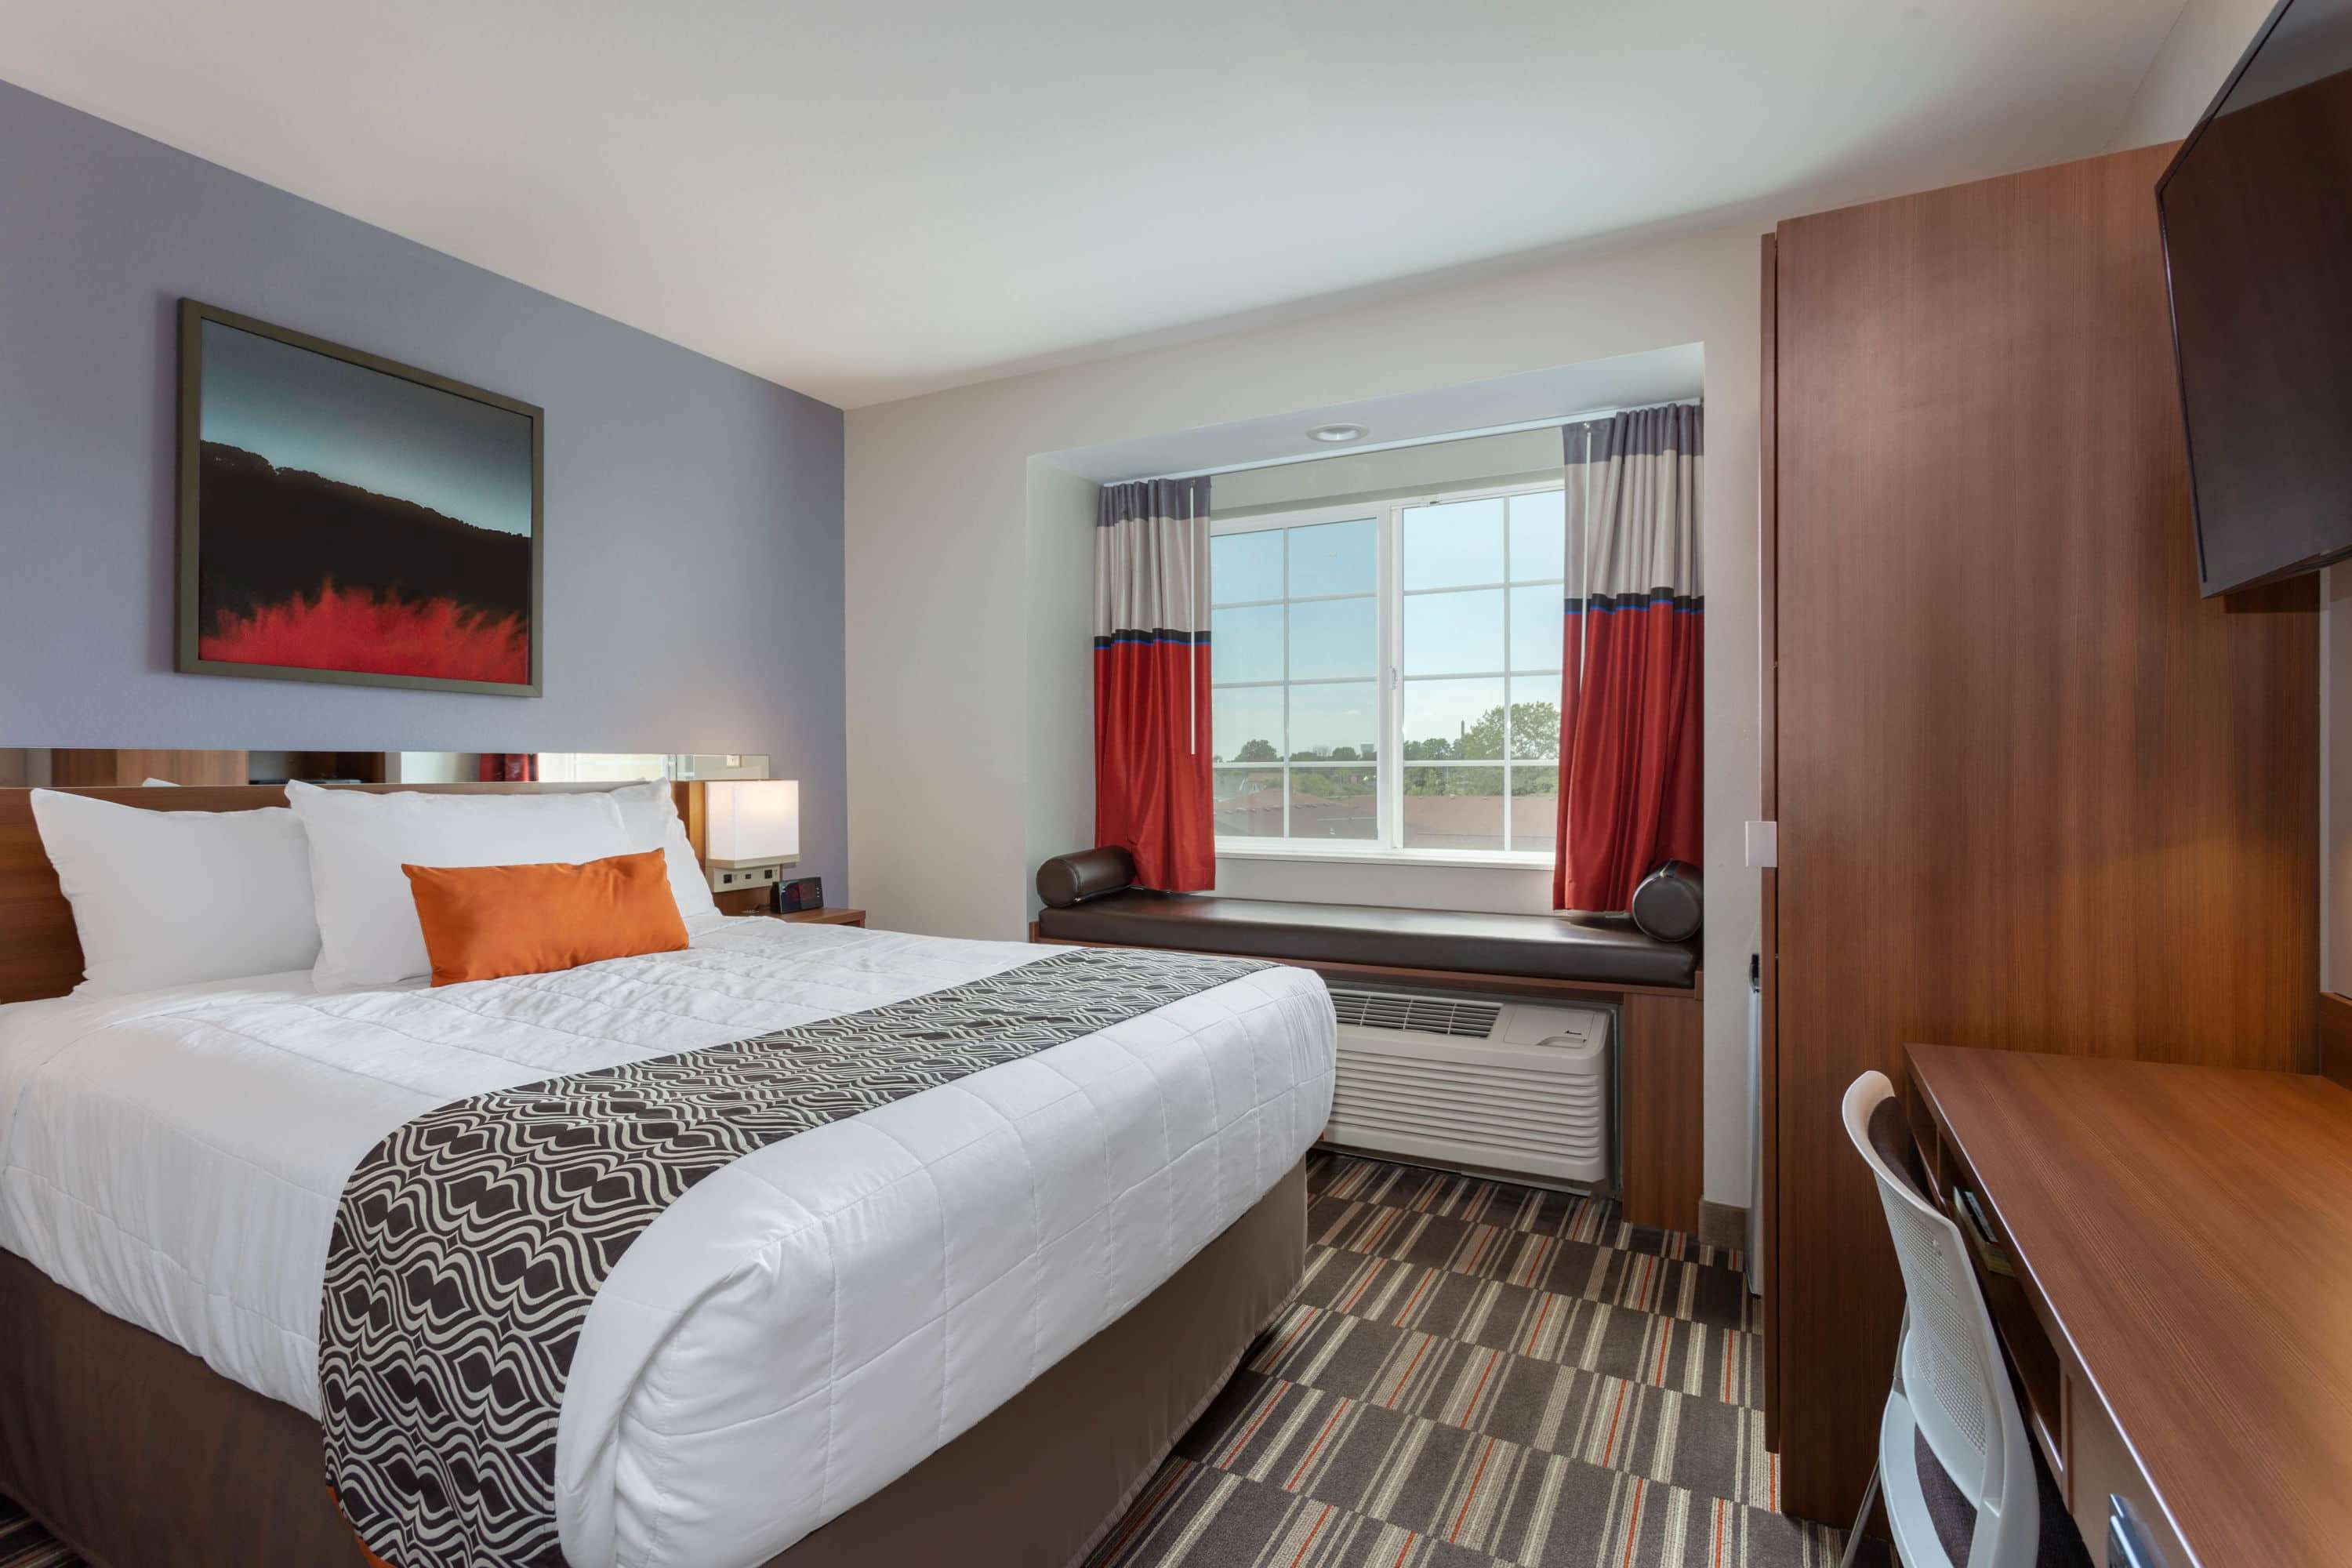 Microtel Inn & Suites by Wyndham Niagara Falls